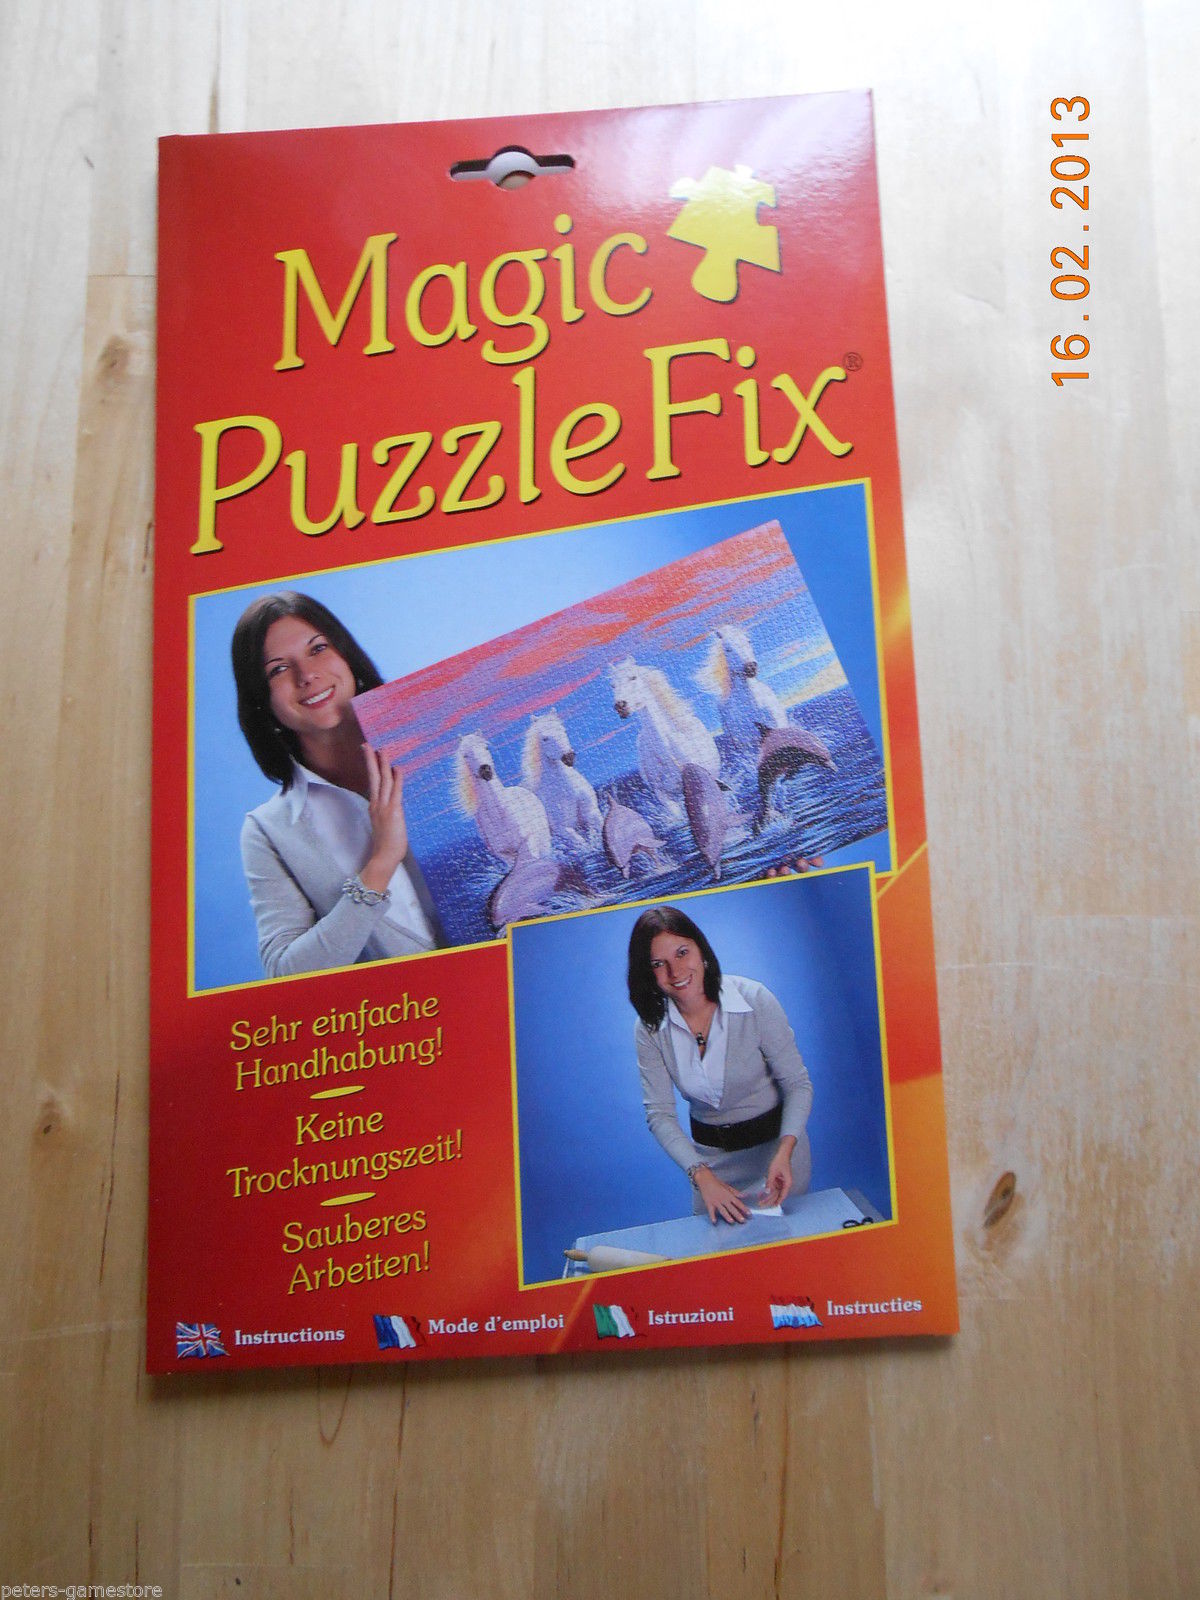 MAGIC PUZZLE FIX  Neu & OVP Der andere Puzzle Kleber, M.I.C. Puzzle Conserver